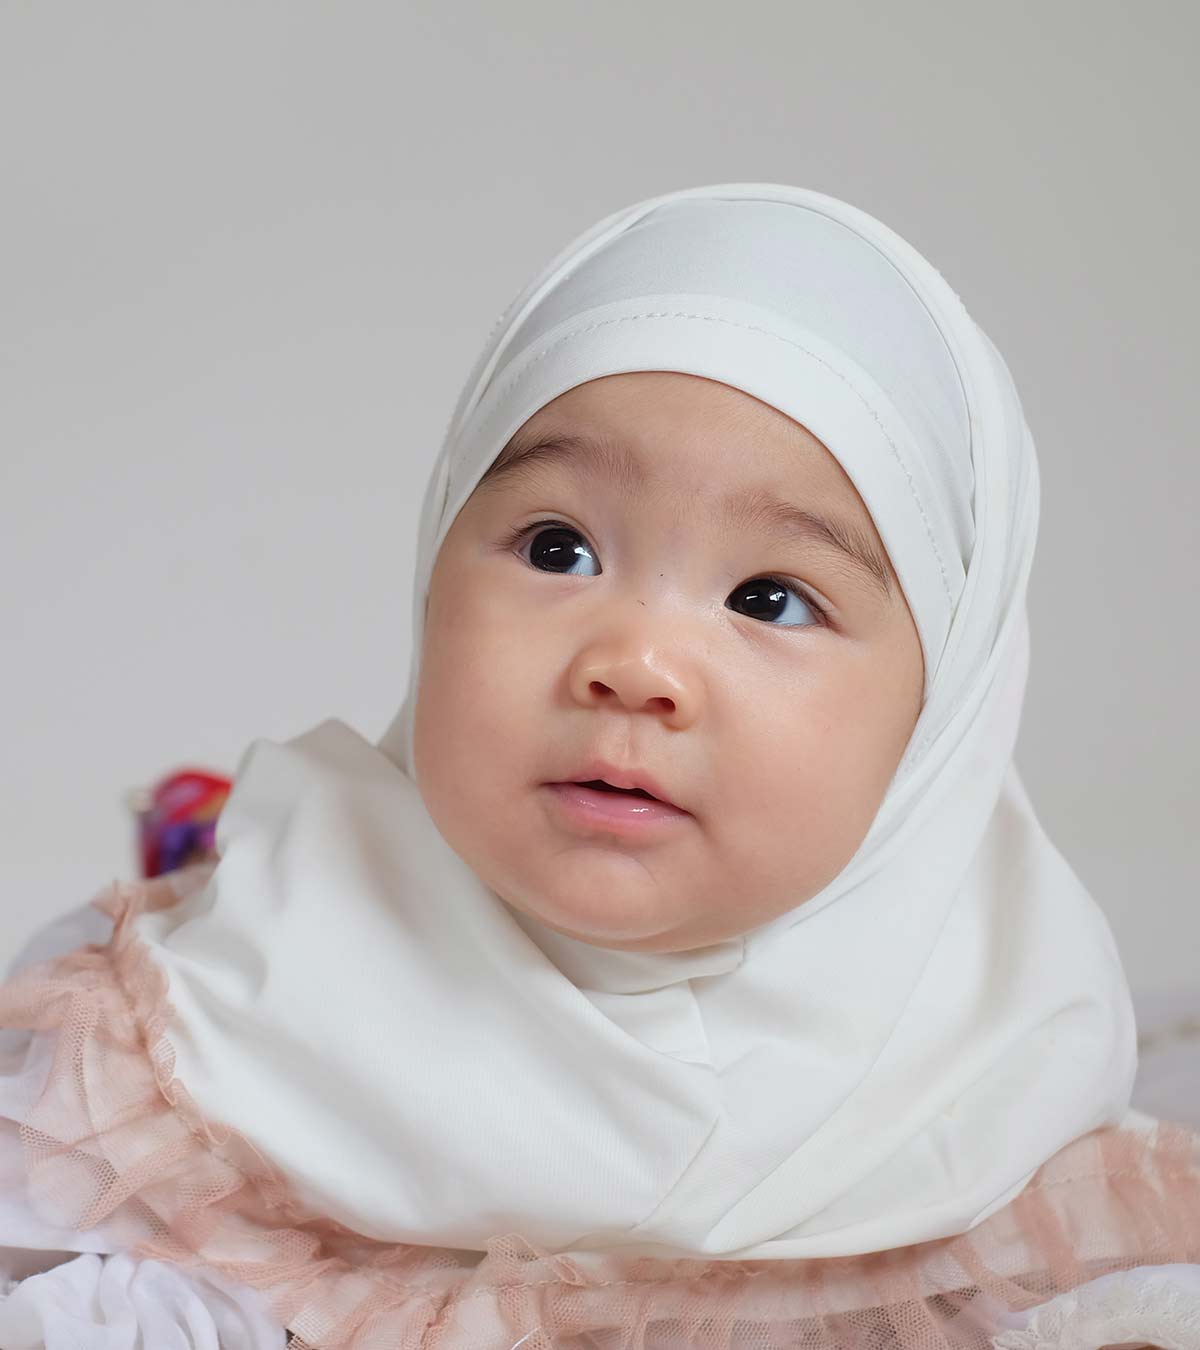 Имя для девочки татарское мусульманское. Красивые мусульманские девочки. Красивые имена мусурман. Самые красивые имена для девочек мусульманские.